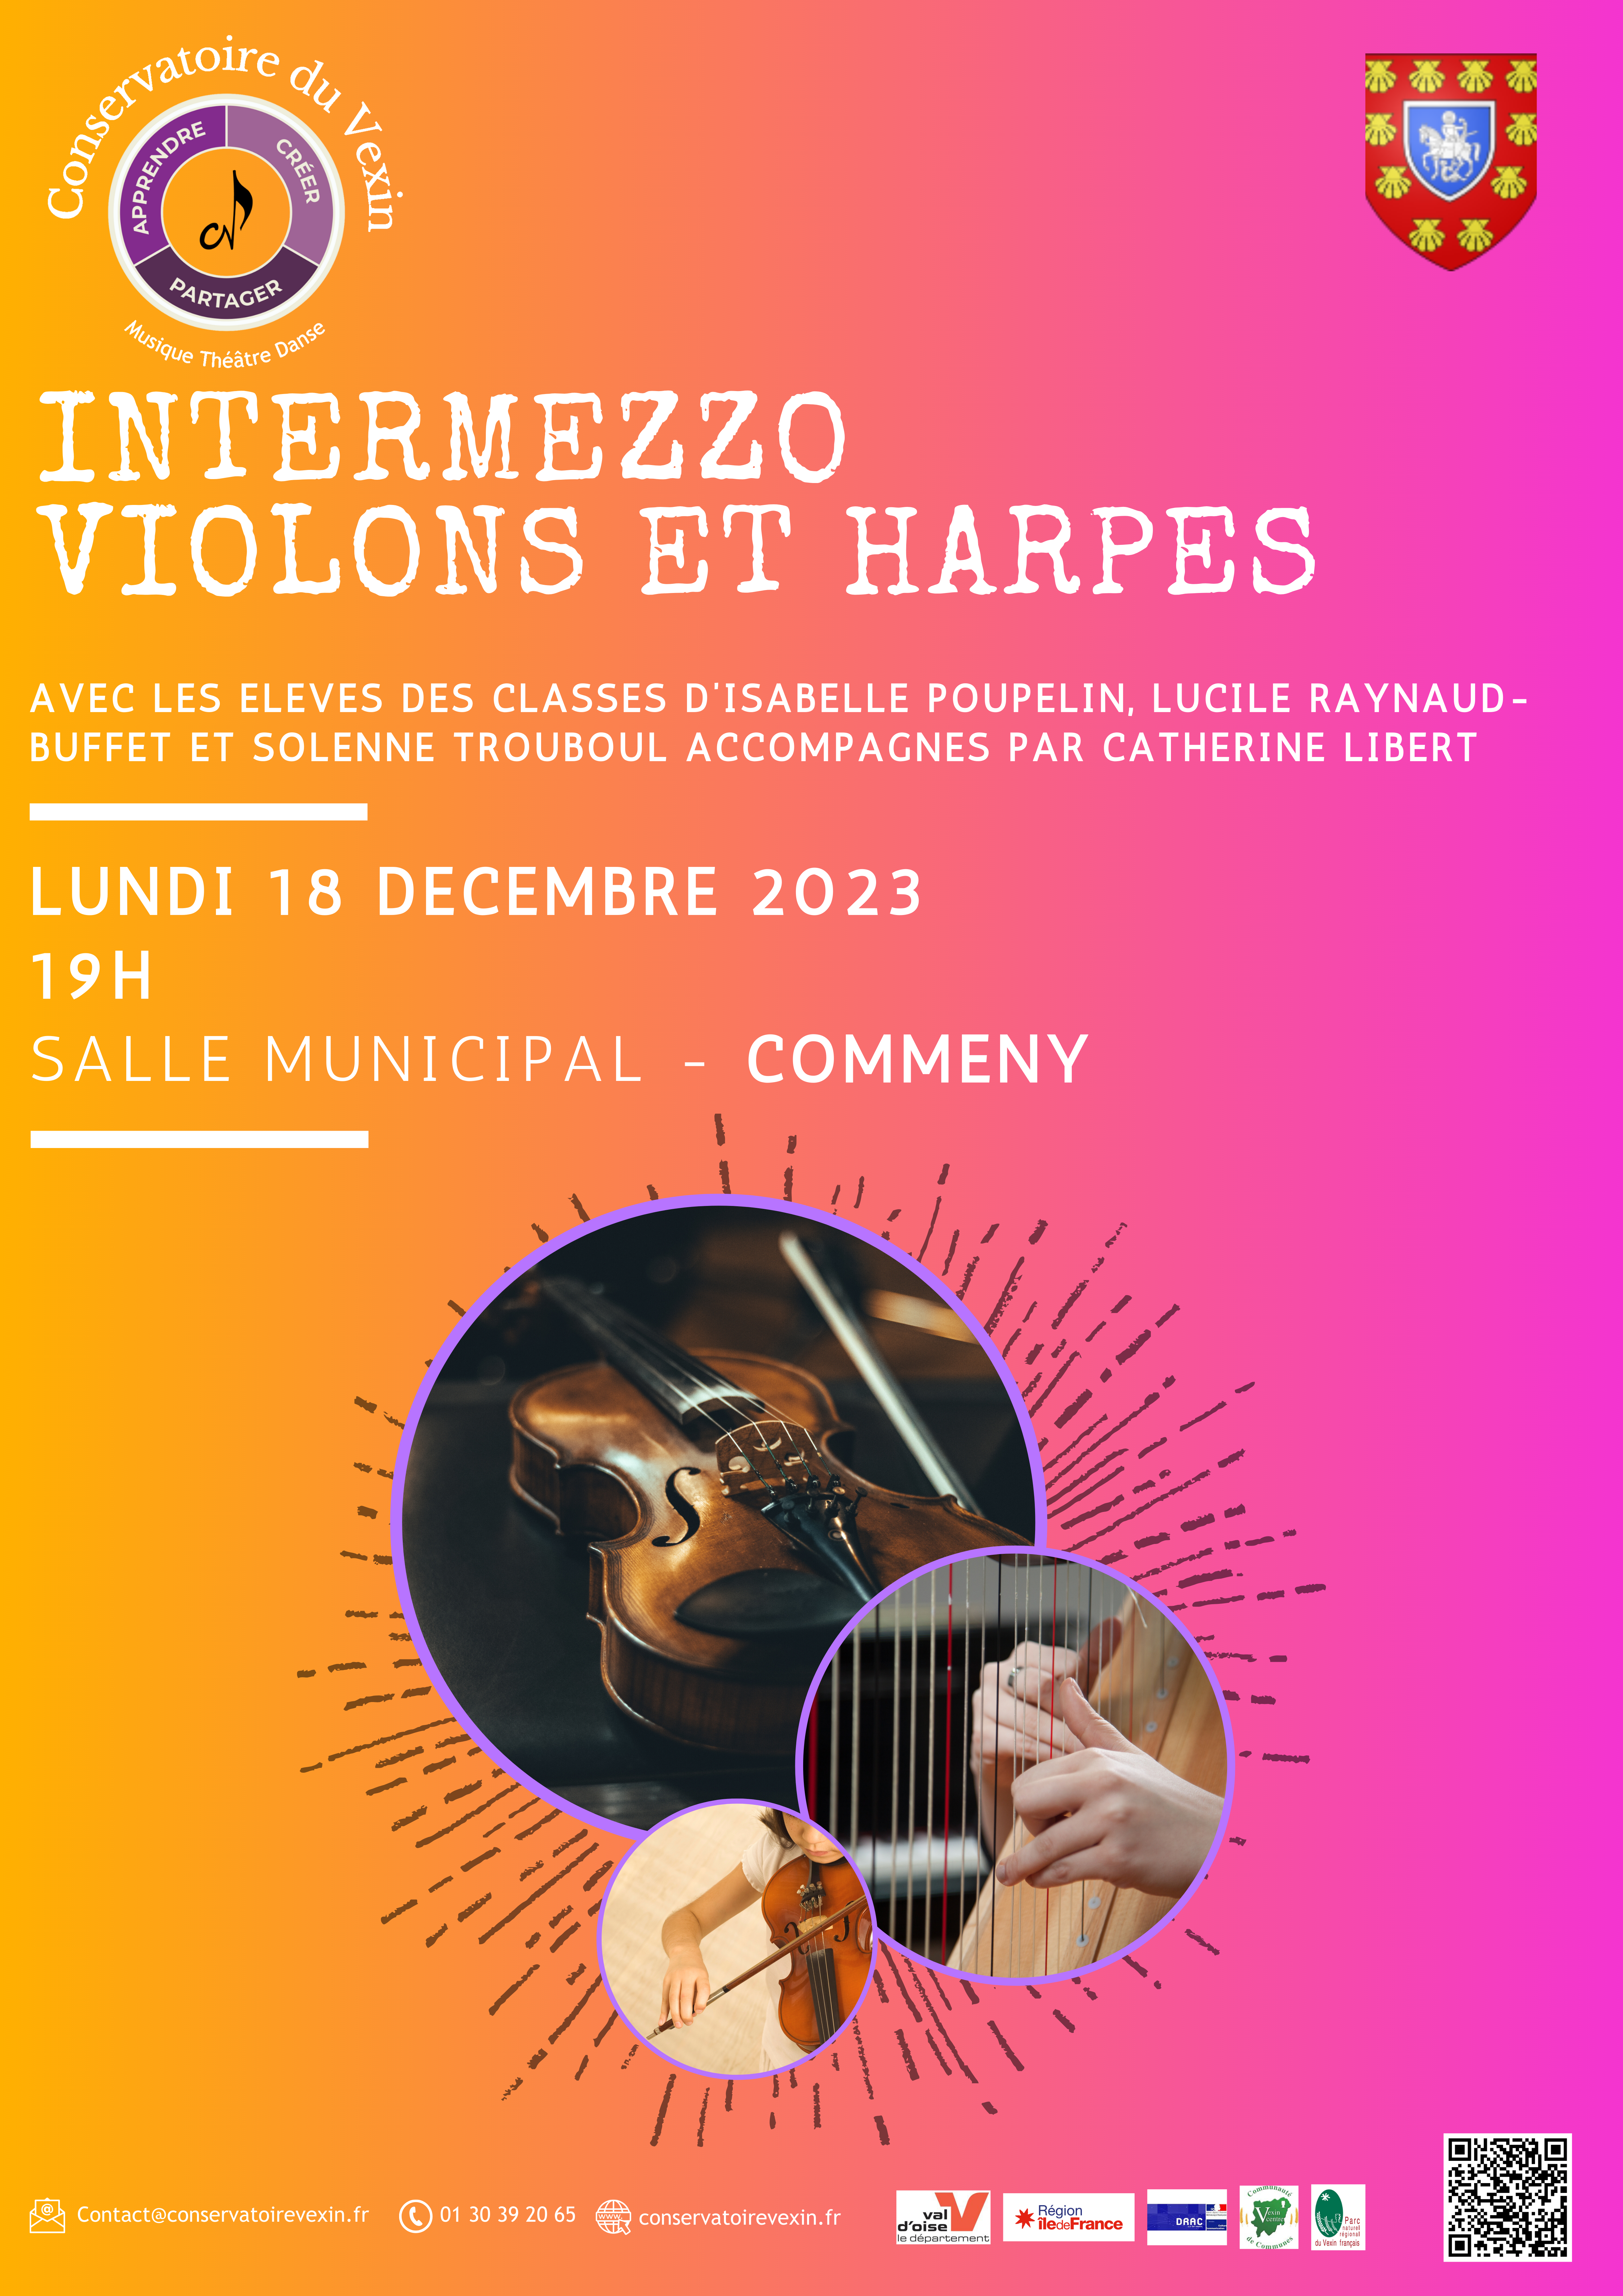 intermezzo violon harpe 2023.png